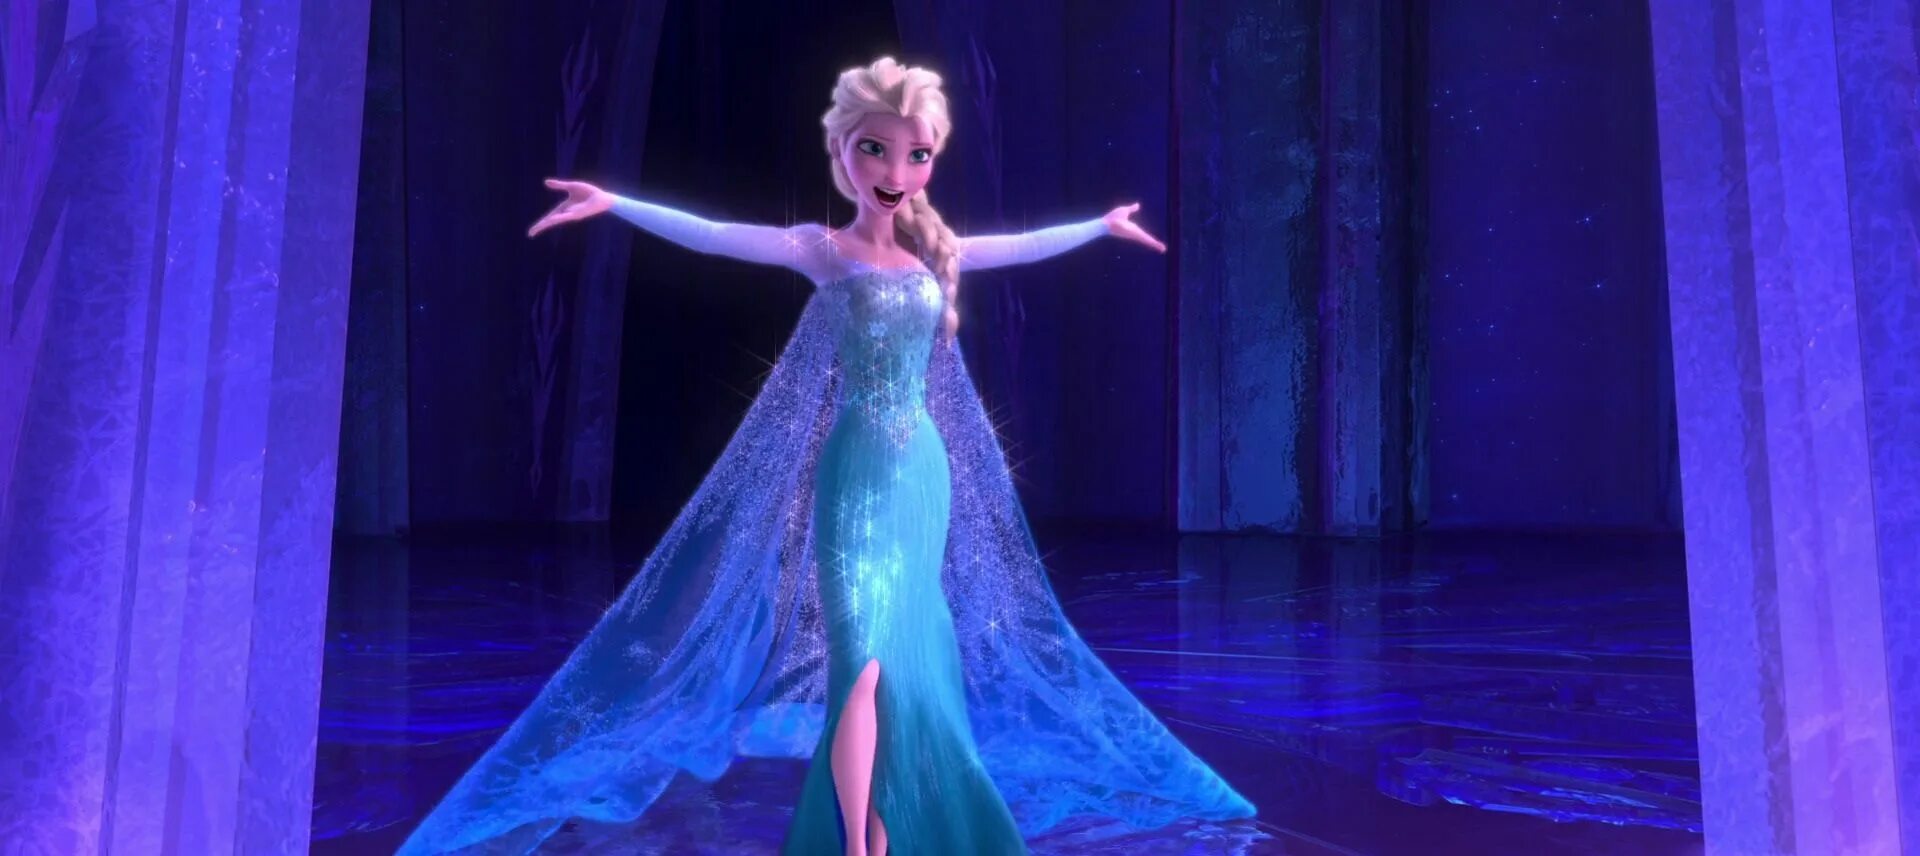 Включи let it go. Frozen - Idina Menzel - Let it go. Let it go идина Мензел. Idina Menzel Elsa. Let it go обложка.